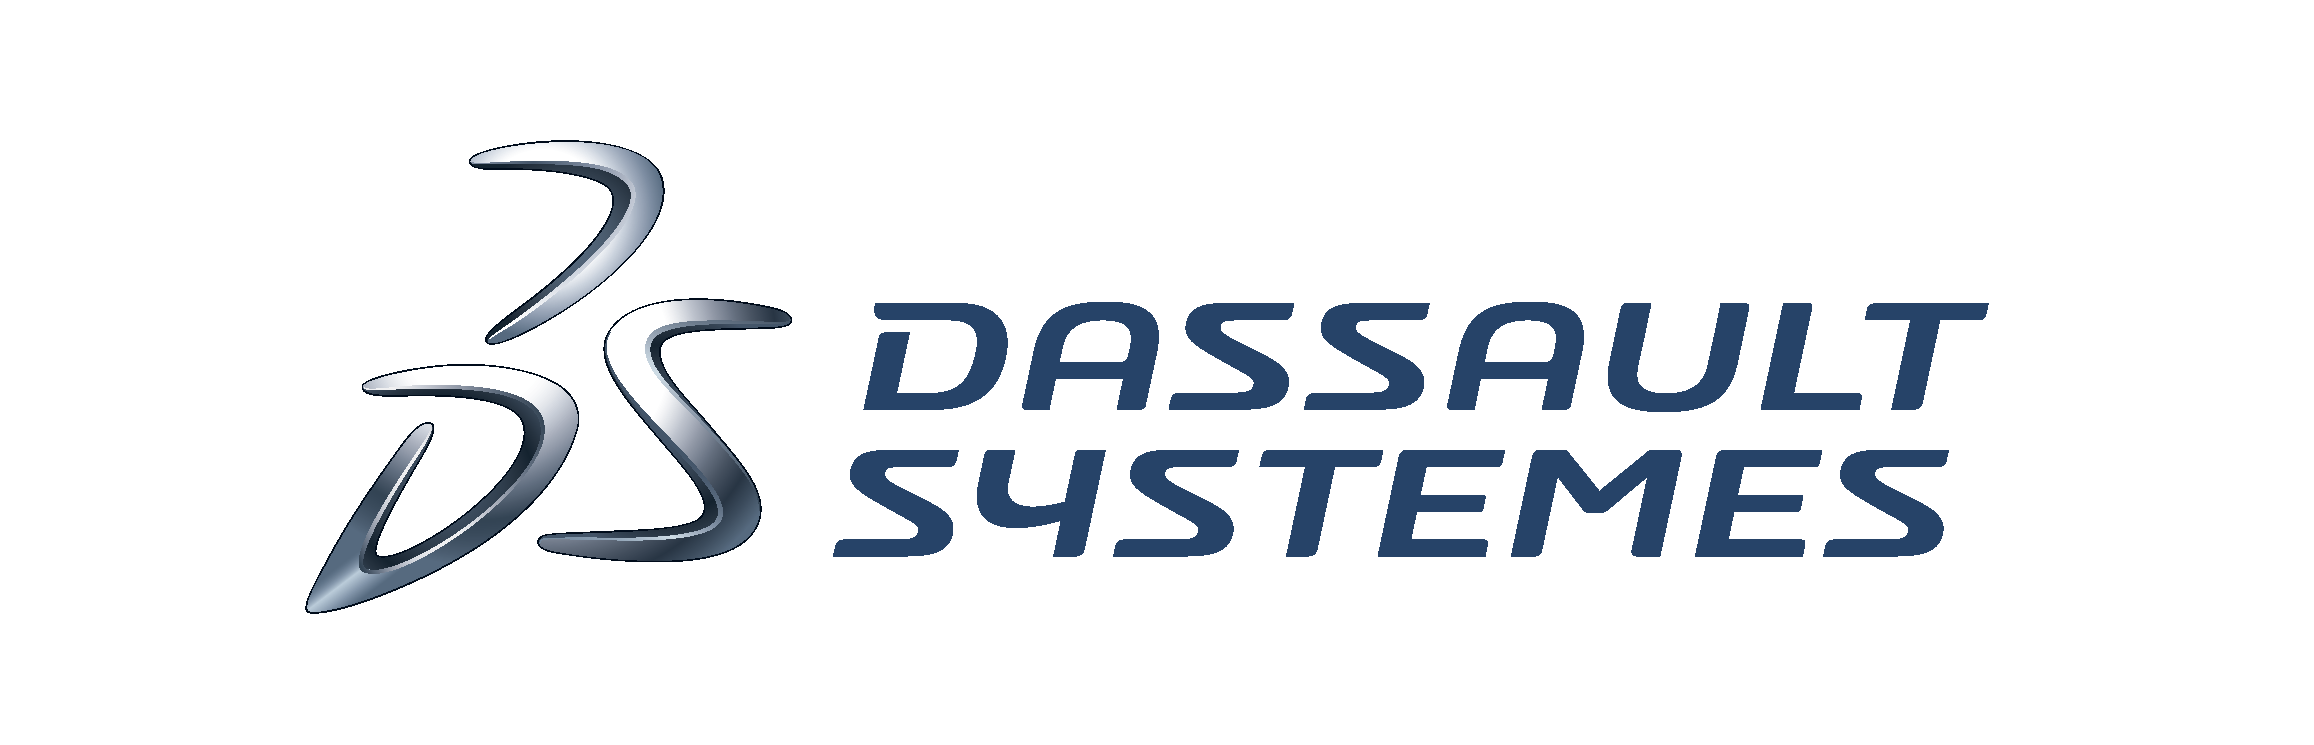 Dassault_logo